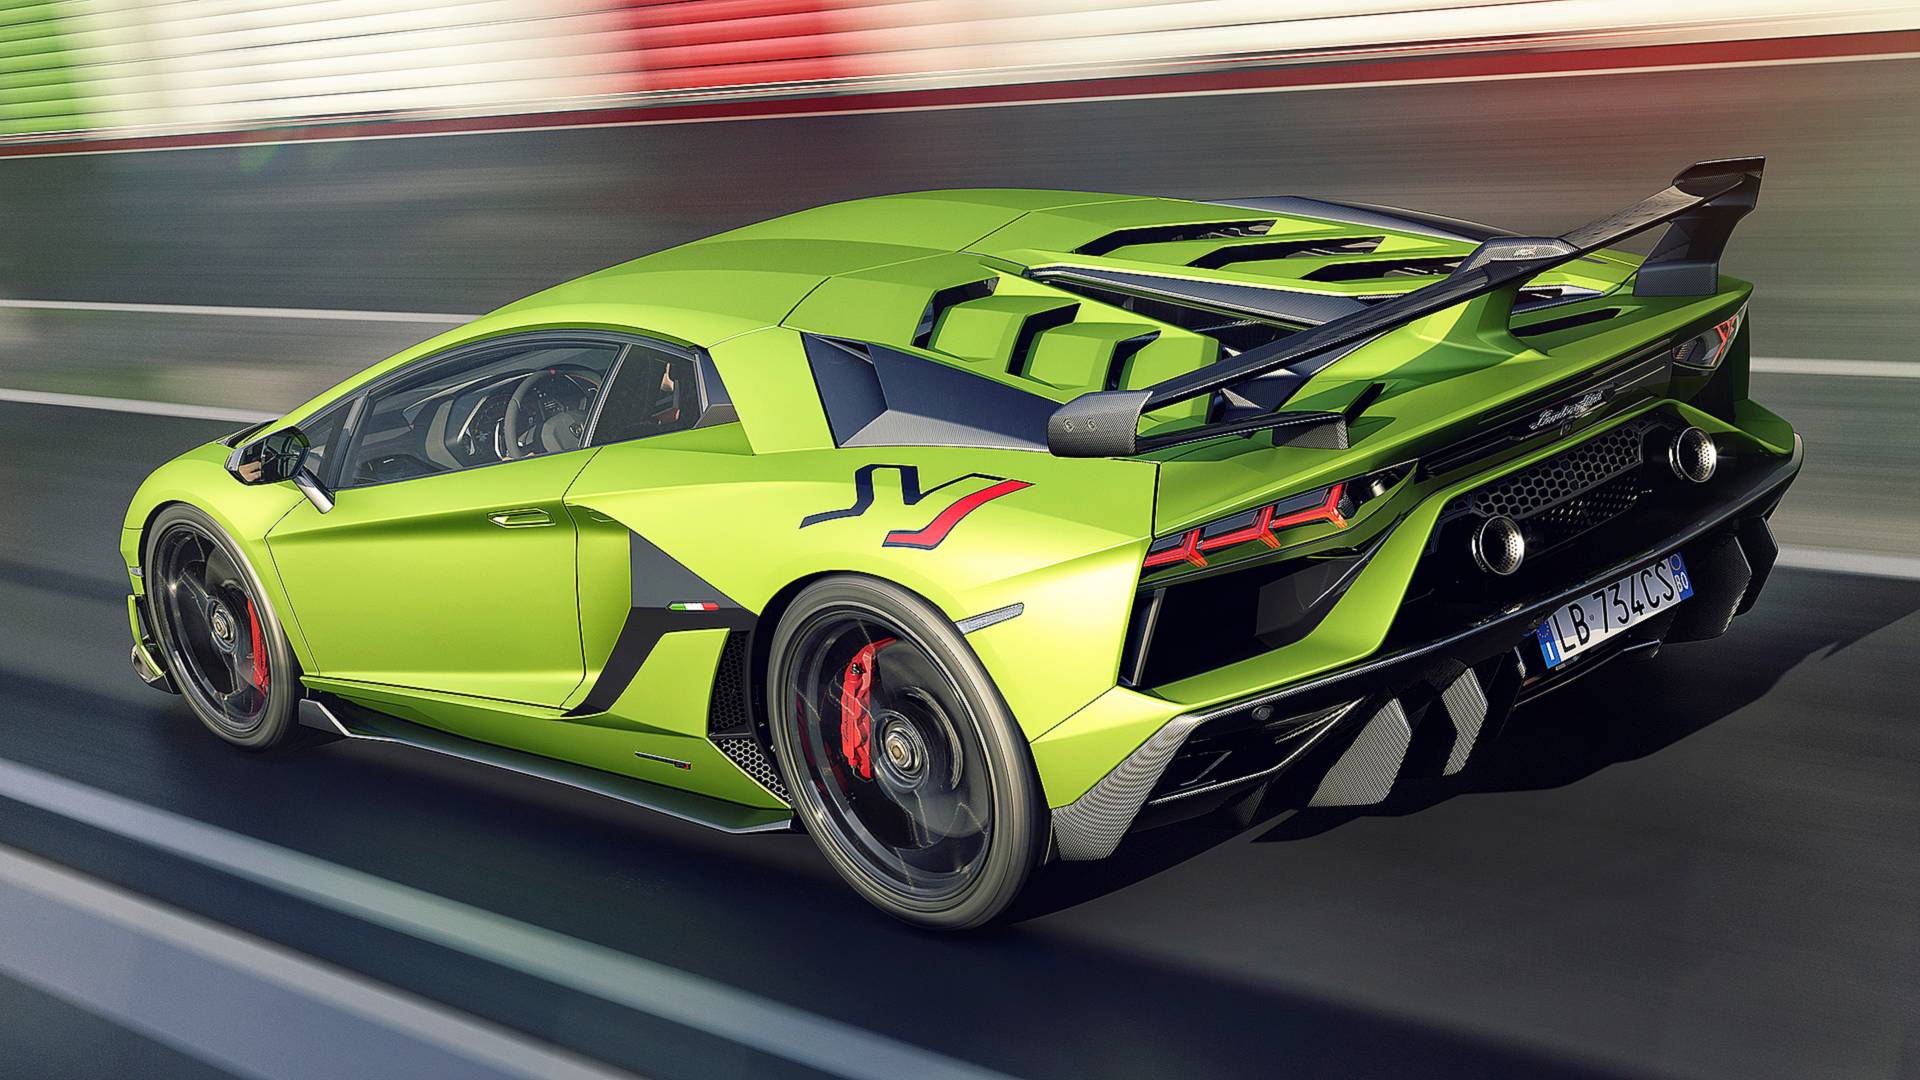 Oficial: Lamborghini Aventador SVJ, extraordinario y radical